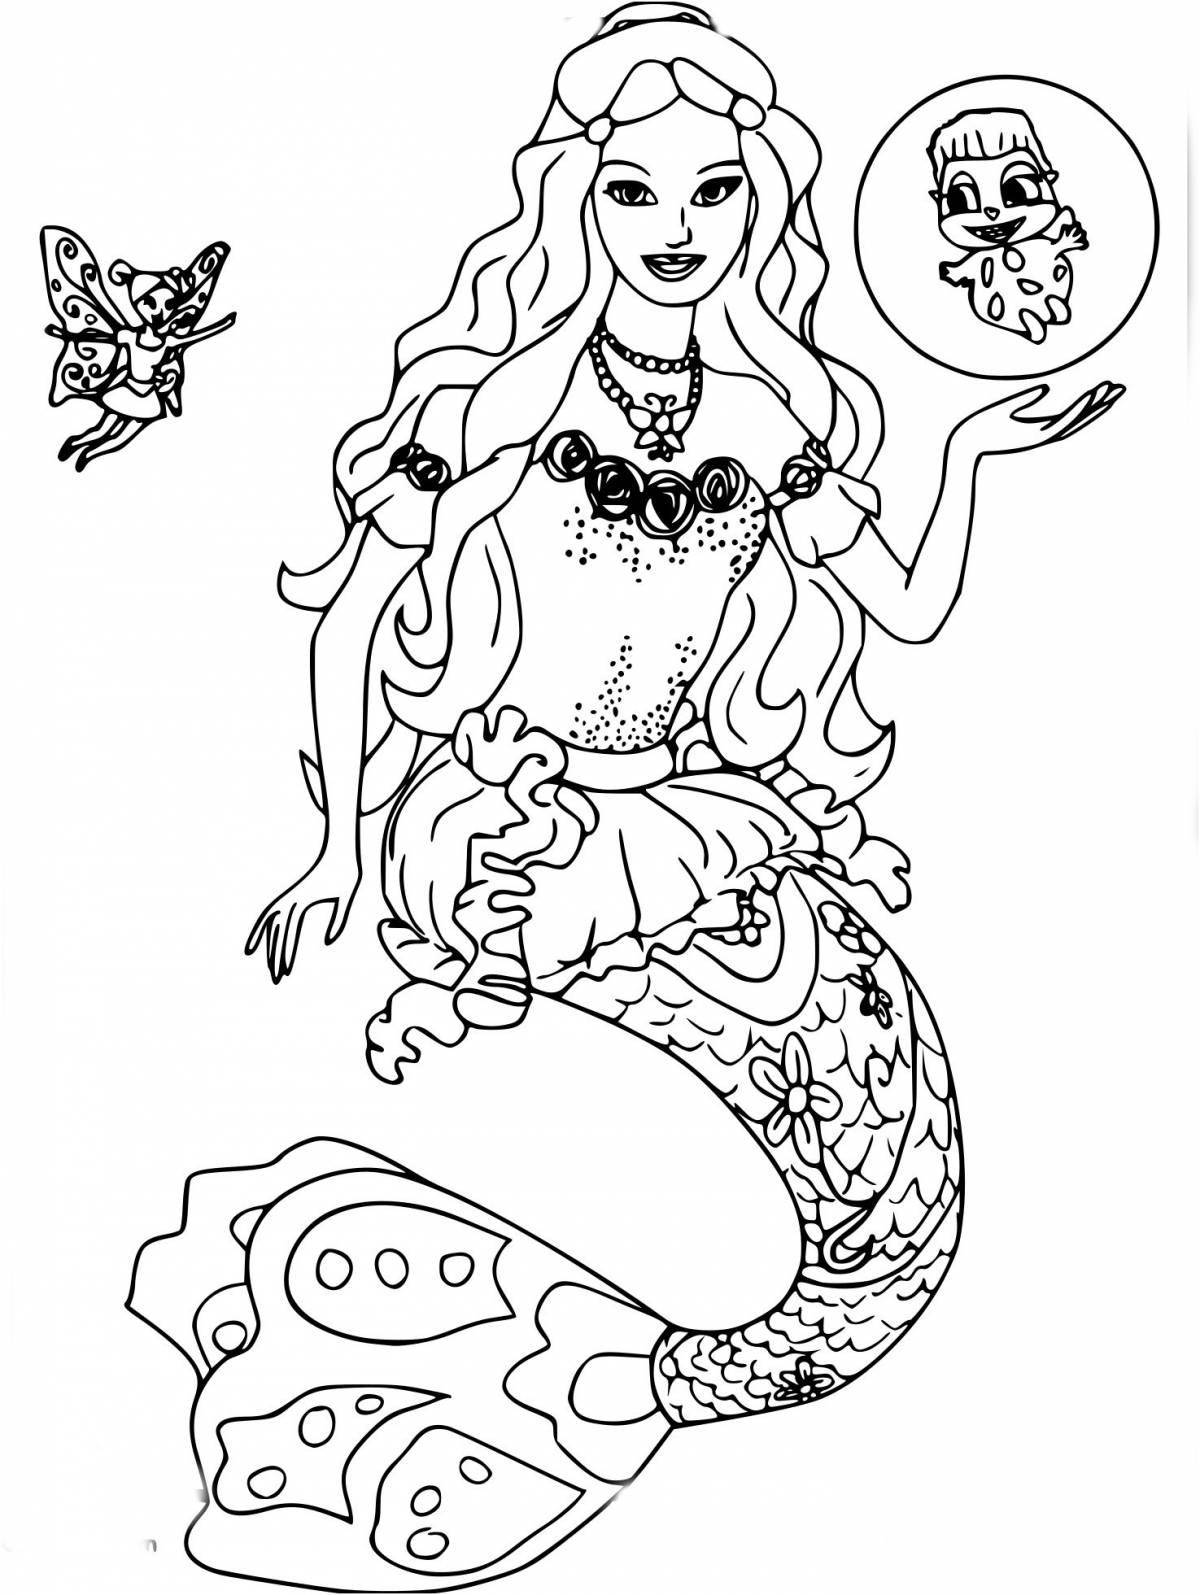 Charming barbie mermaid coloring book